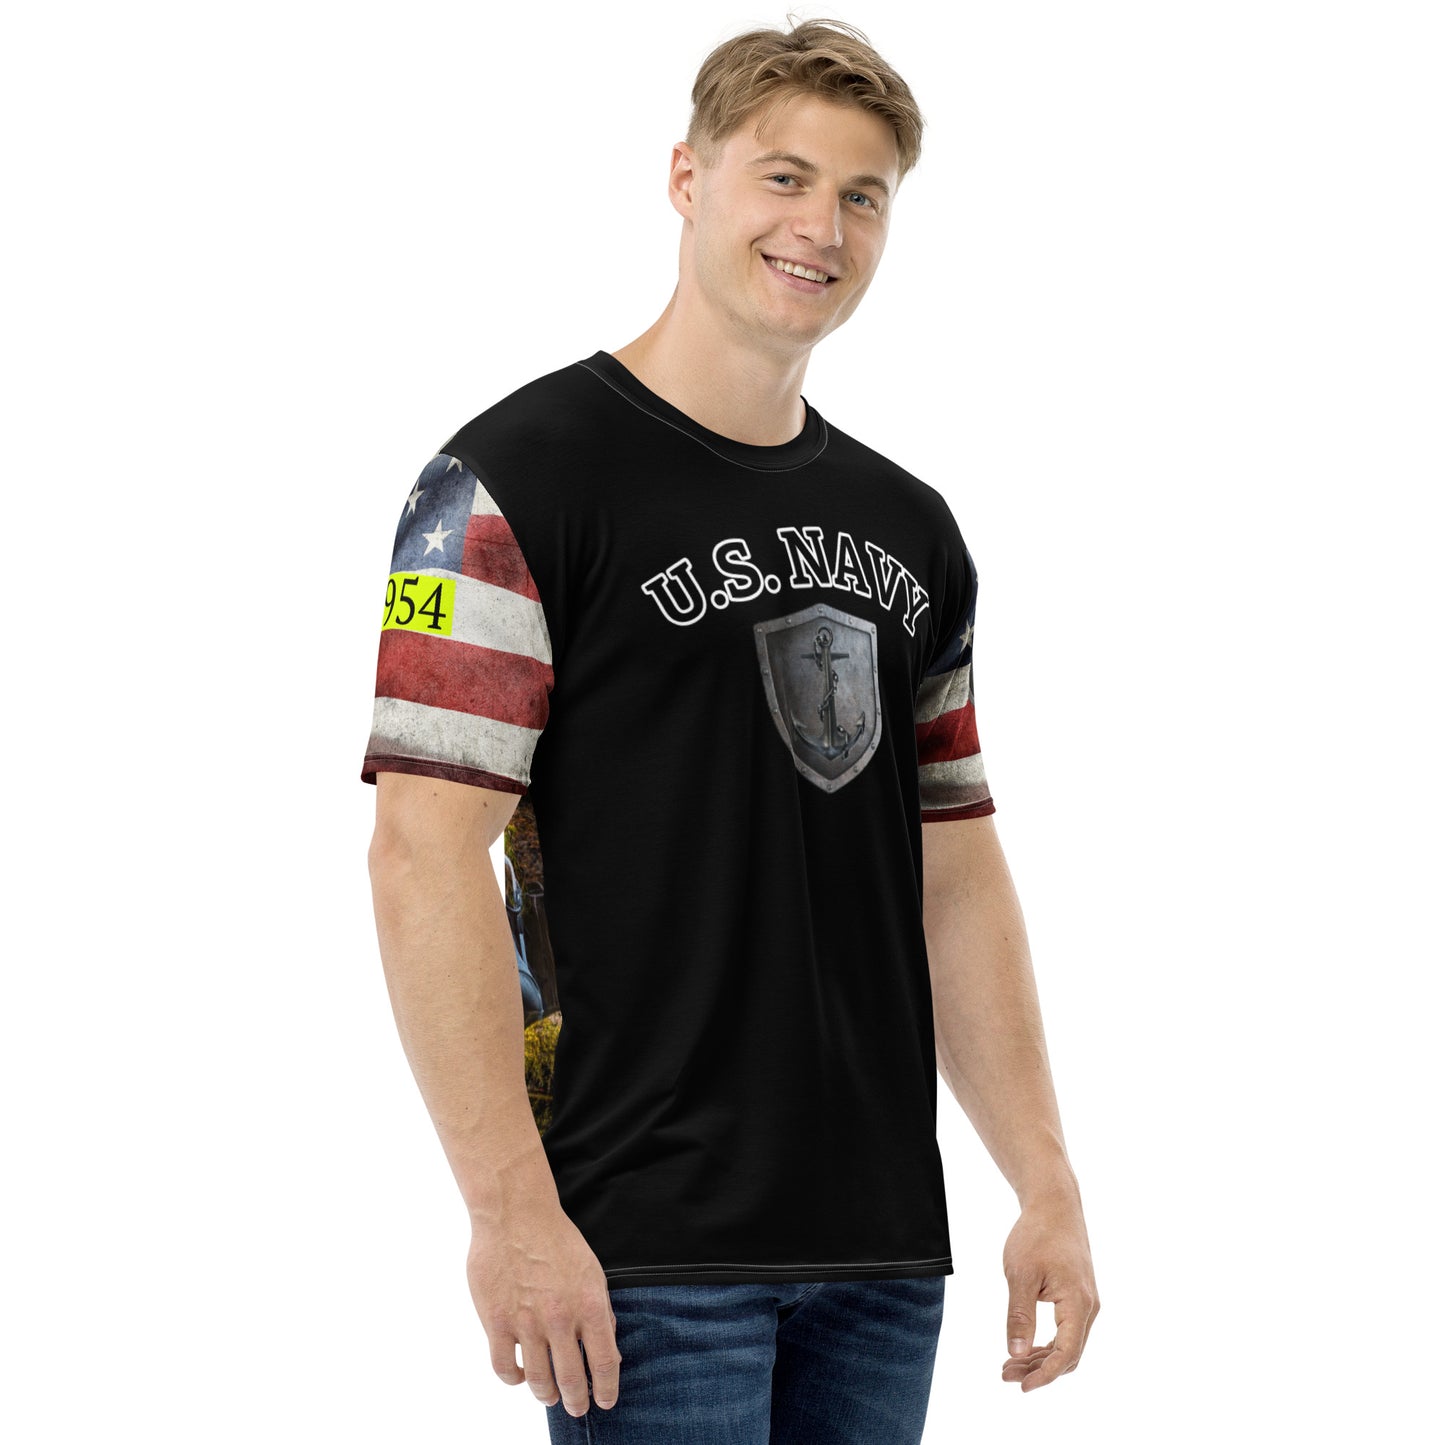 U.S. NAVY 954 Men's t-shirt